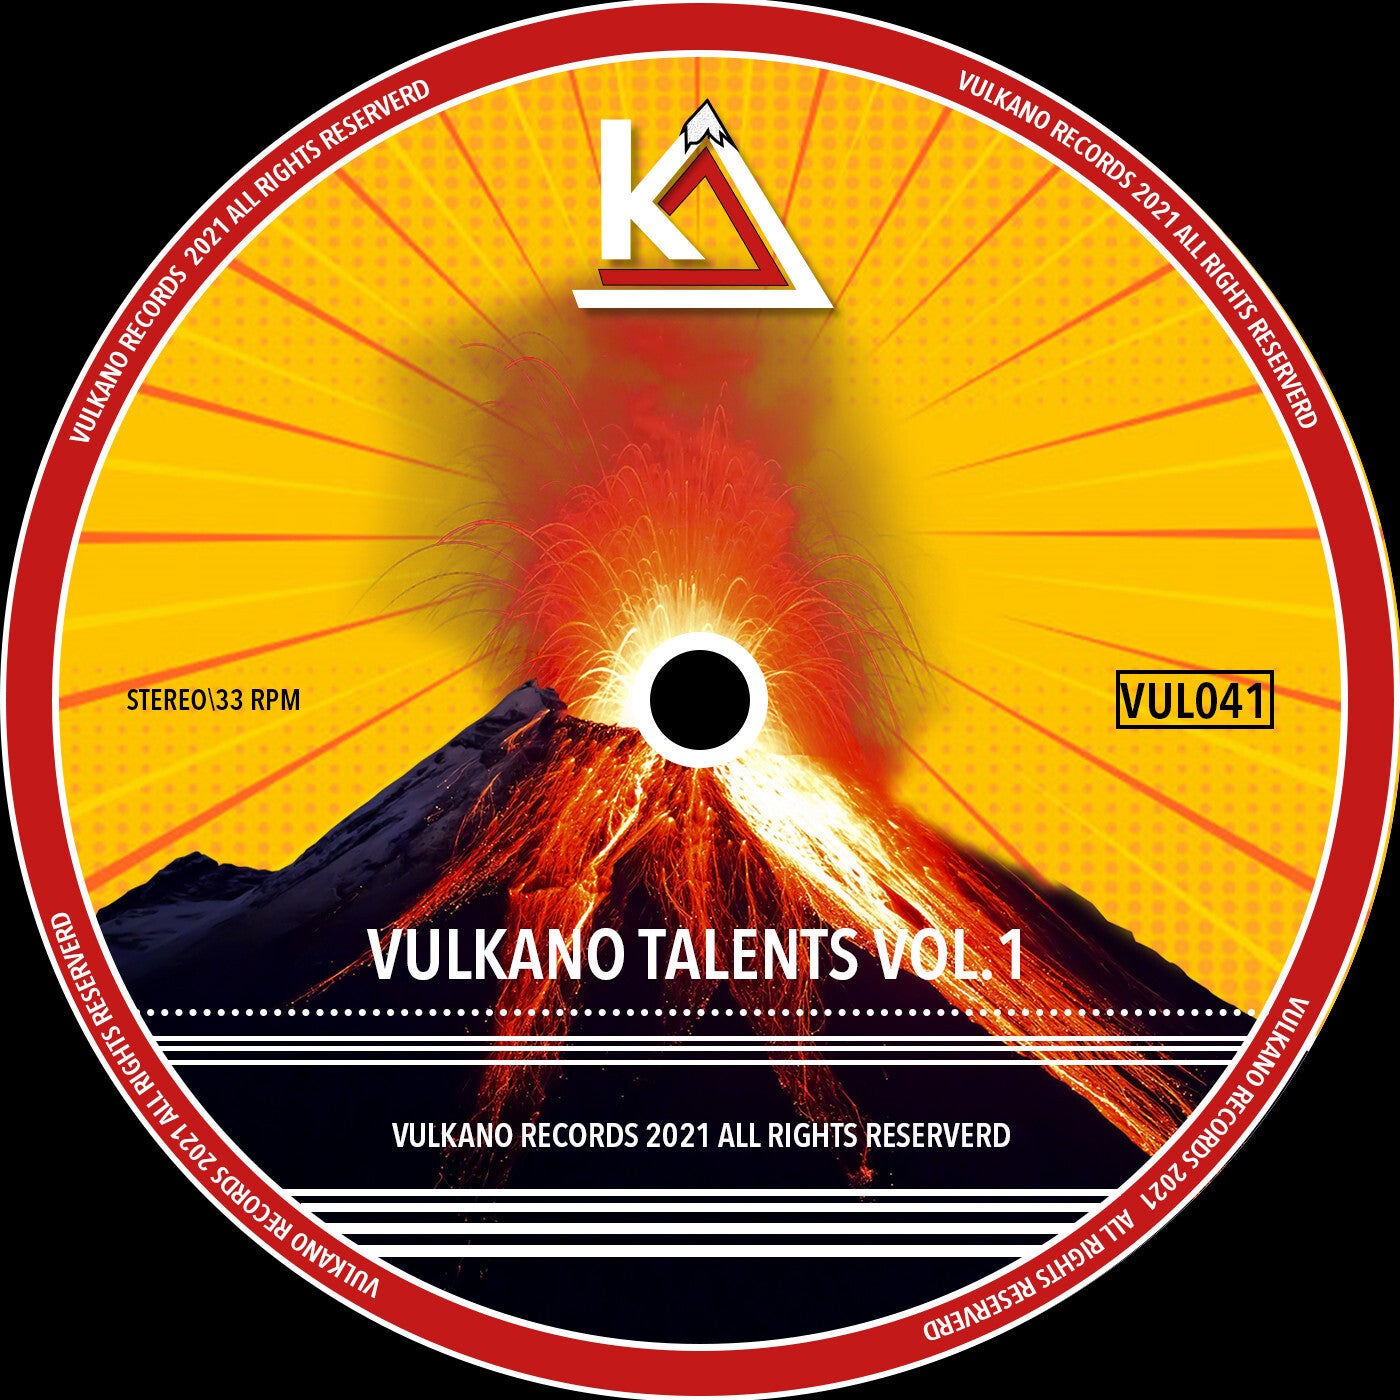 VA – Vulkano Talents Vol.1 [VUL041]